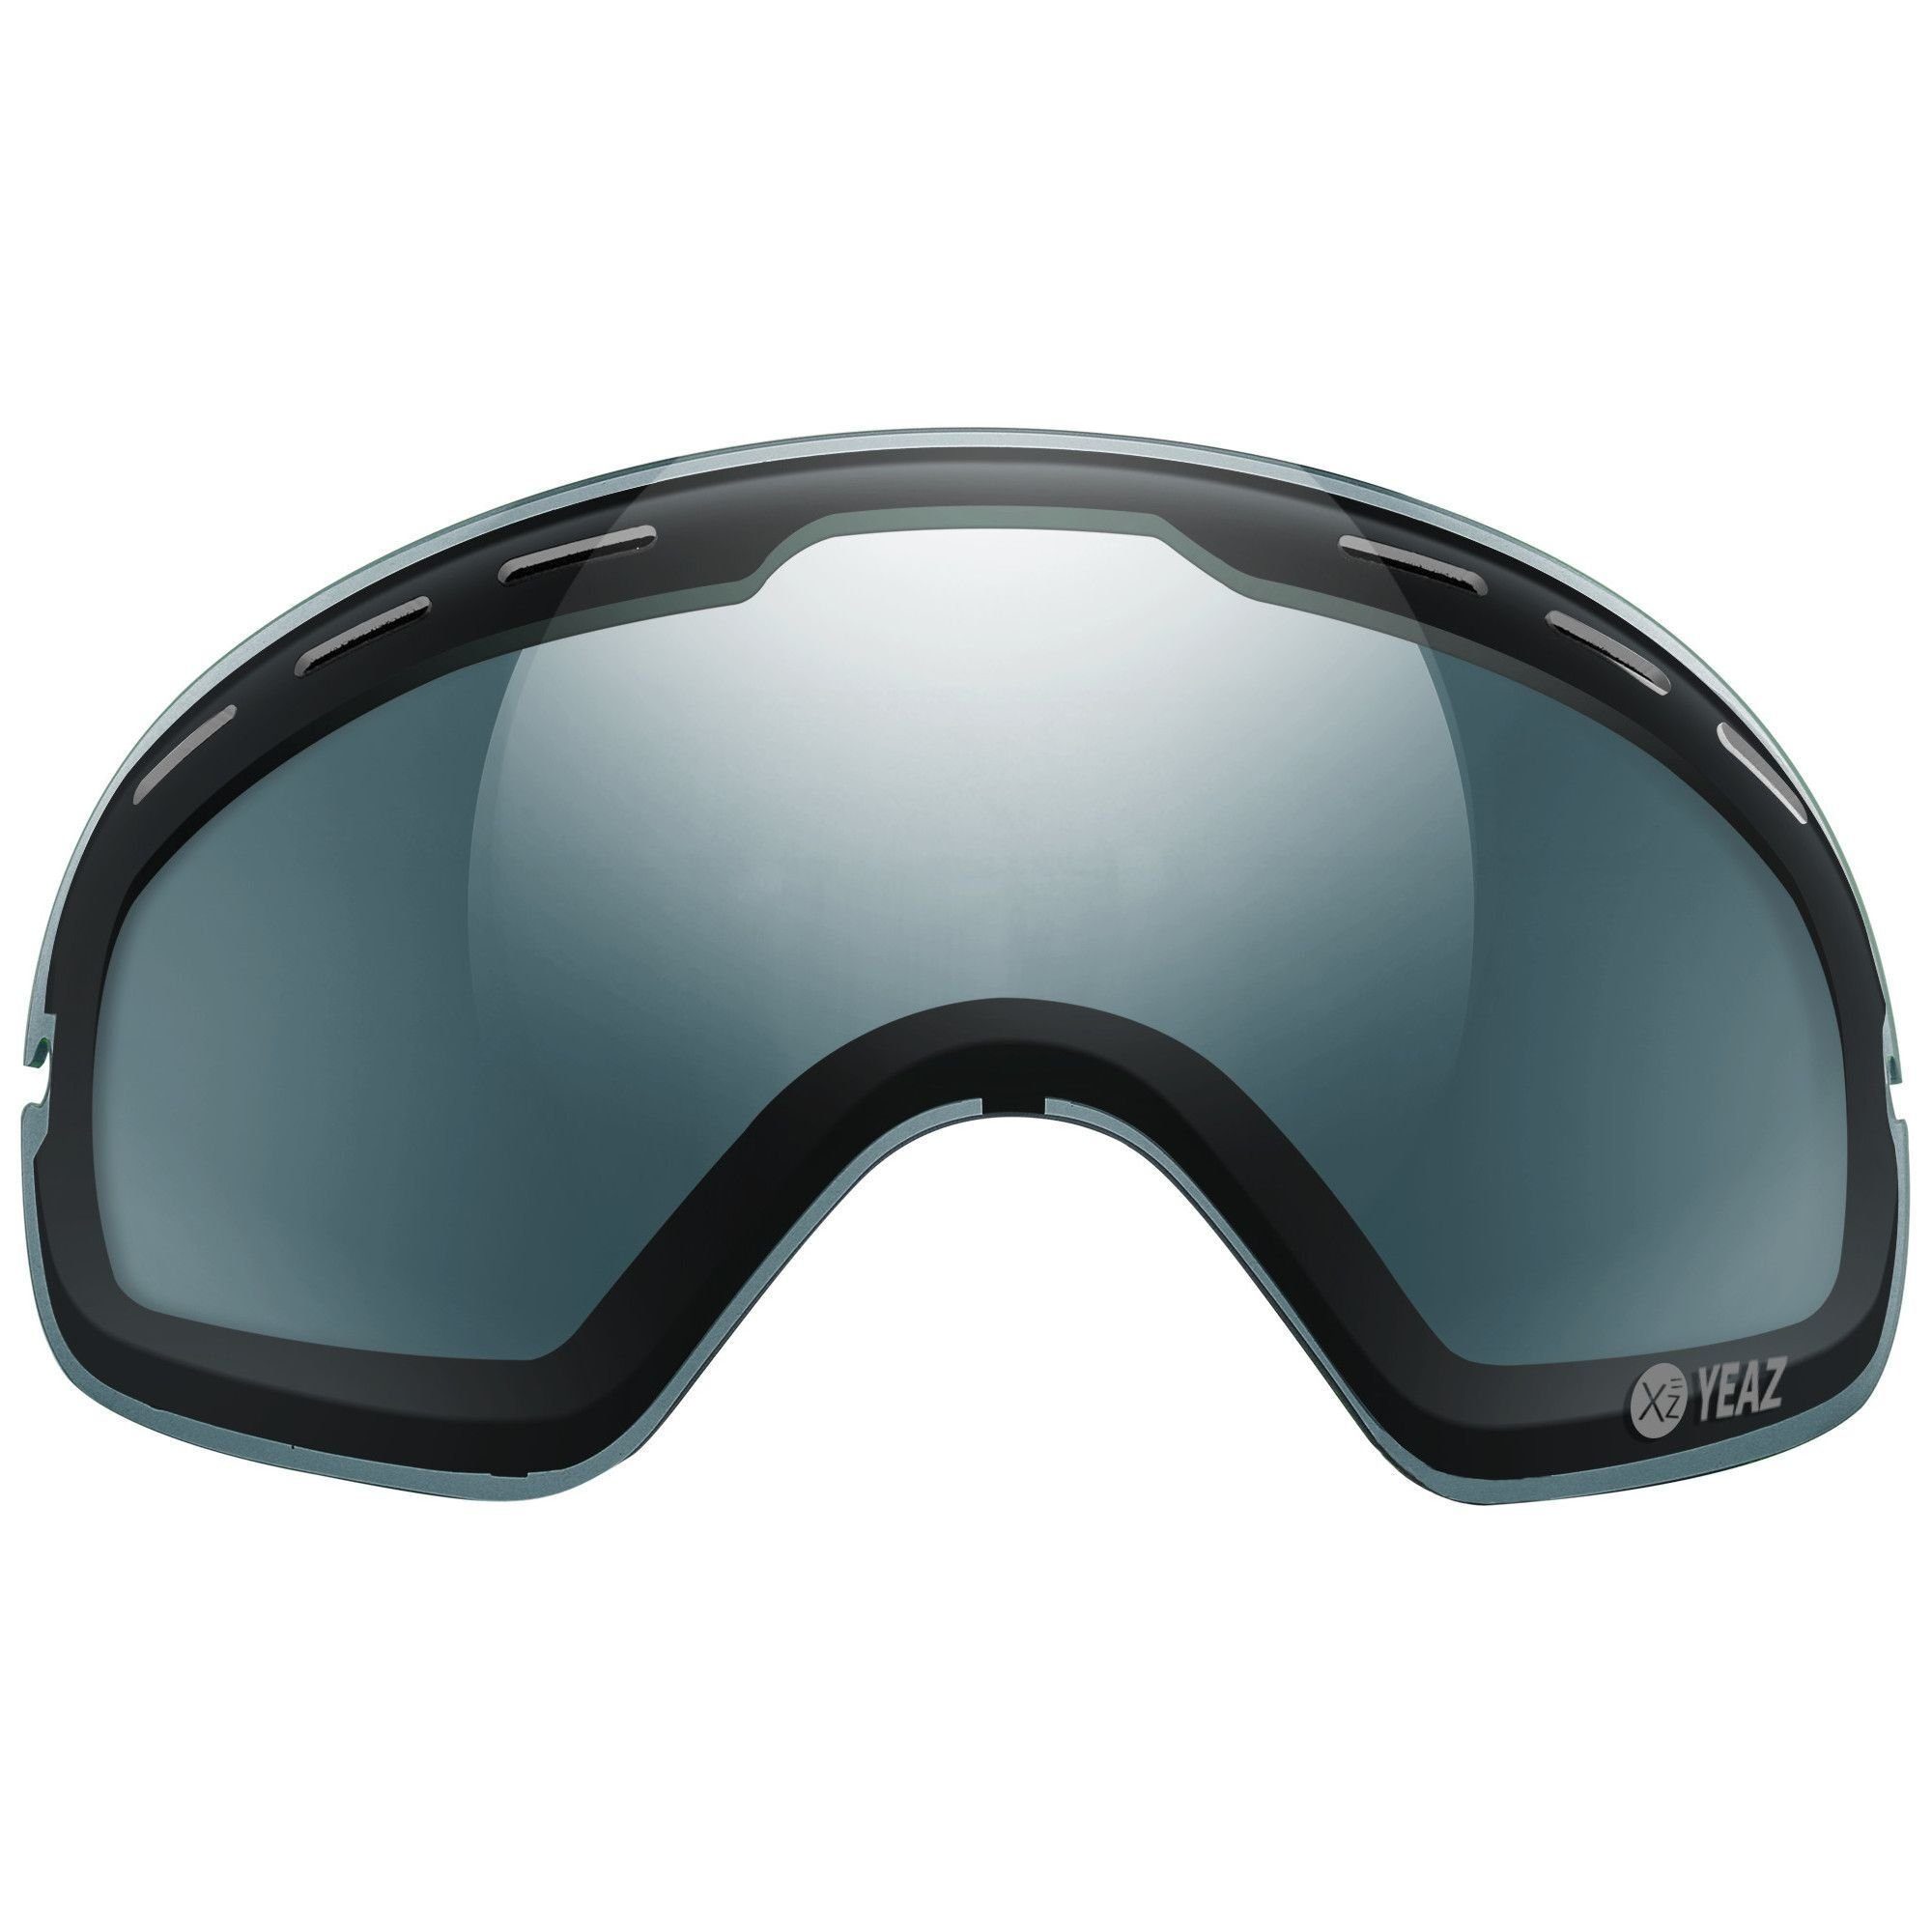 YEAZ Skibrille XTRM-SUMMIT polarisiertes wechselglas, ohne rahmen, Wechselglas für XTRM-SUMMIT ohne Rahmen Skibrille